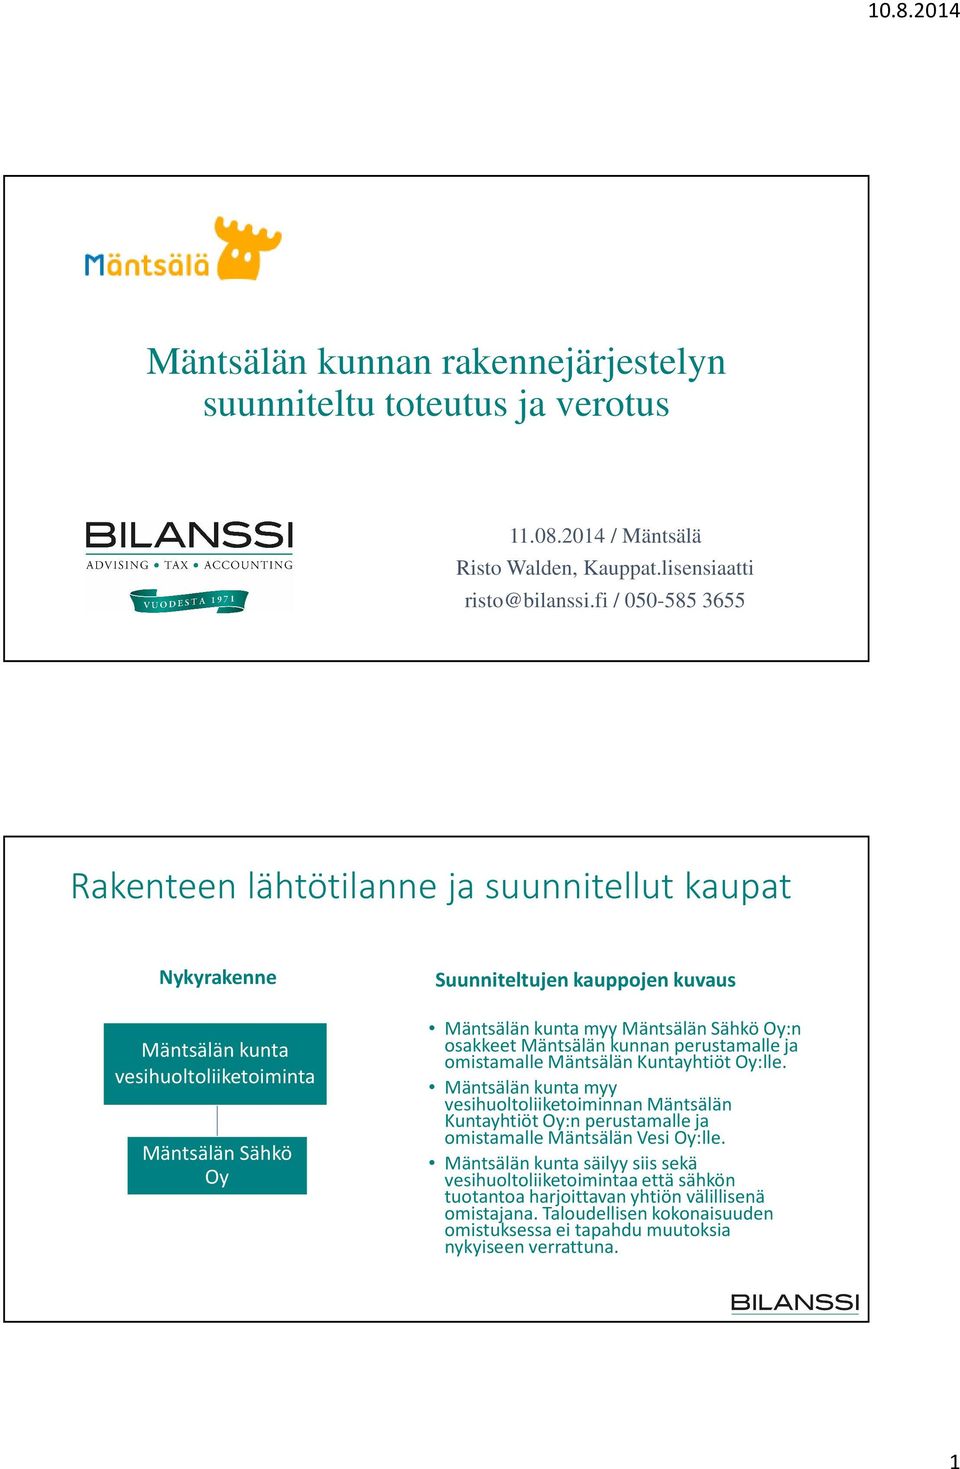 Oy:n osakkeet Mäntsälän kunnan perustamalle ja omistamalle Mäntsälän Kuntayhtiöt Oy:lle.